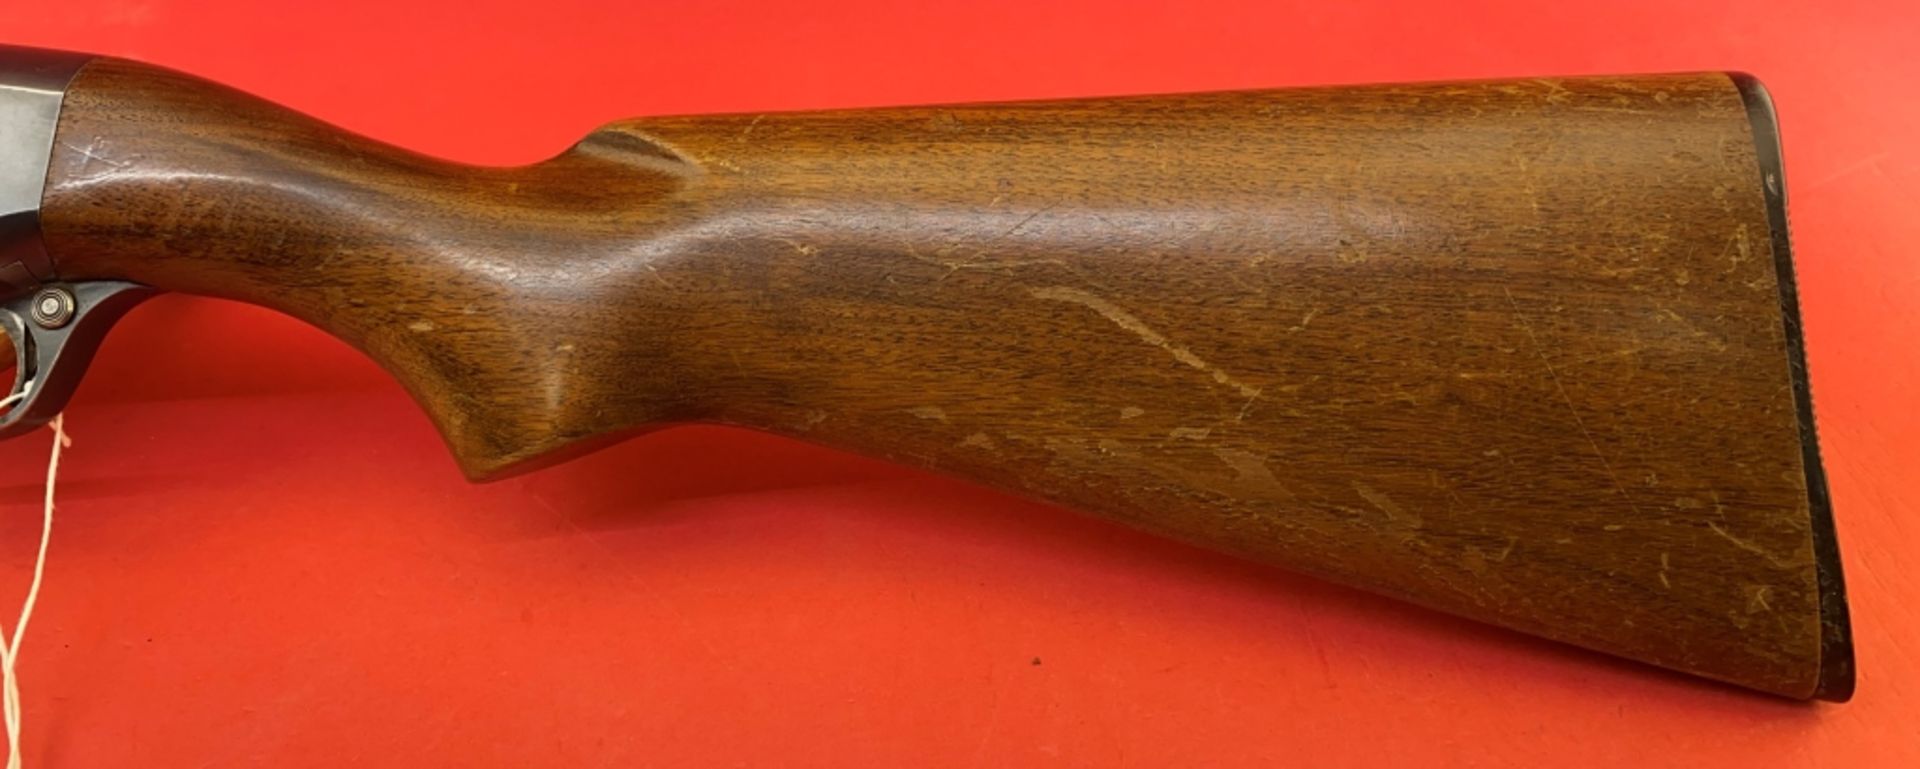 Remington 31 12 ga Shotgun - Image 13 of 14